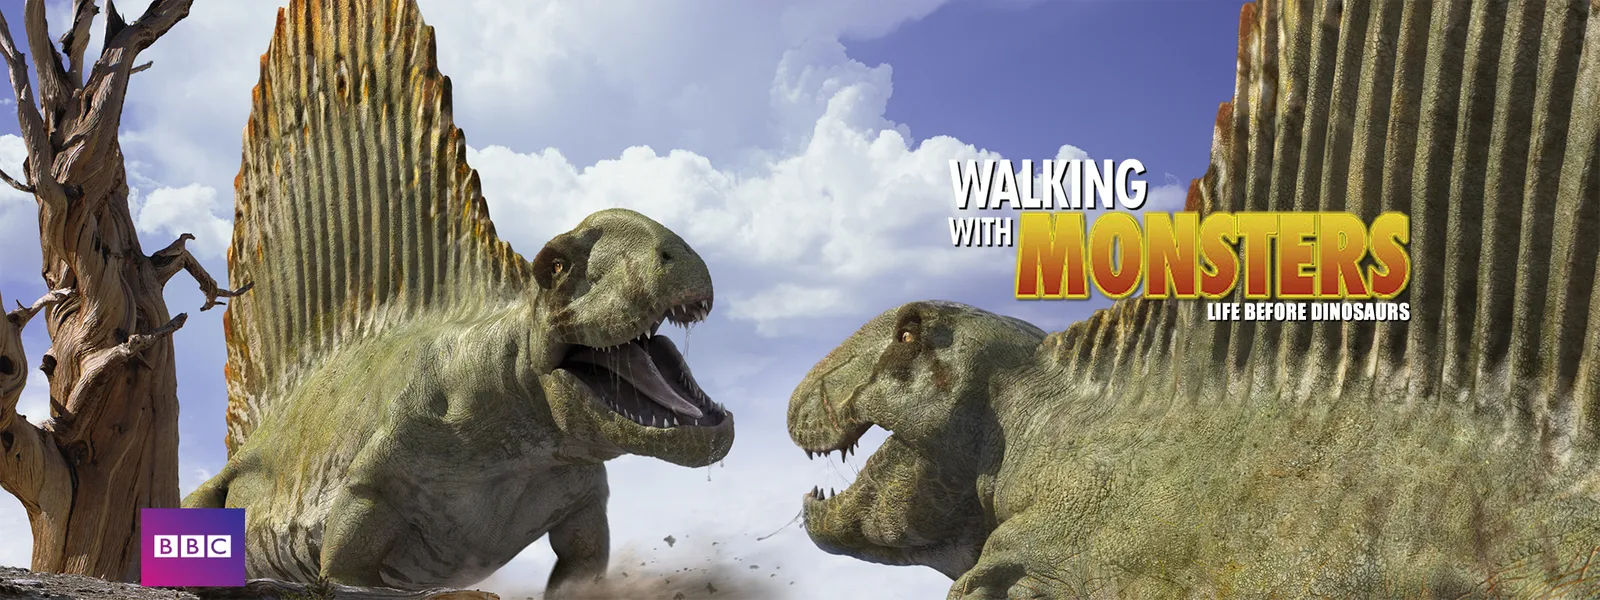 ウォーキング With モンスター 前恐竜時代 巨大生物の誕生 が見放題